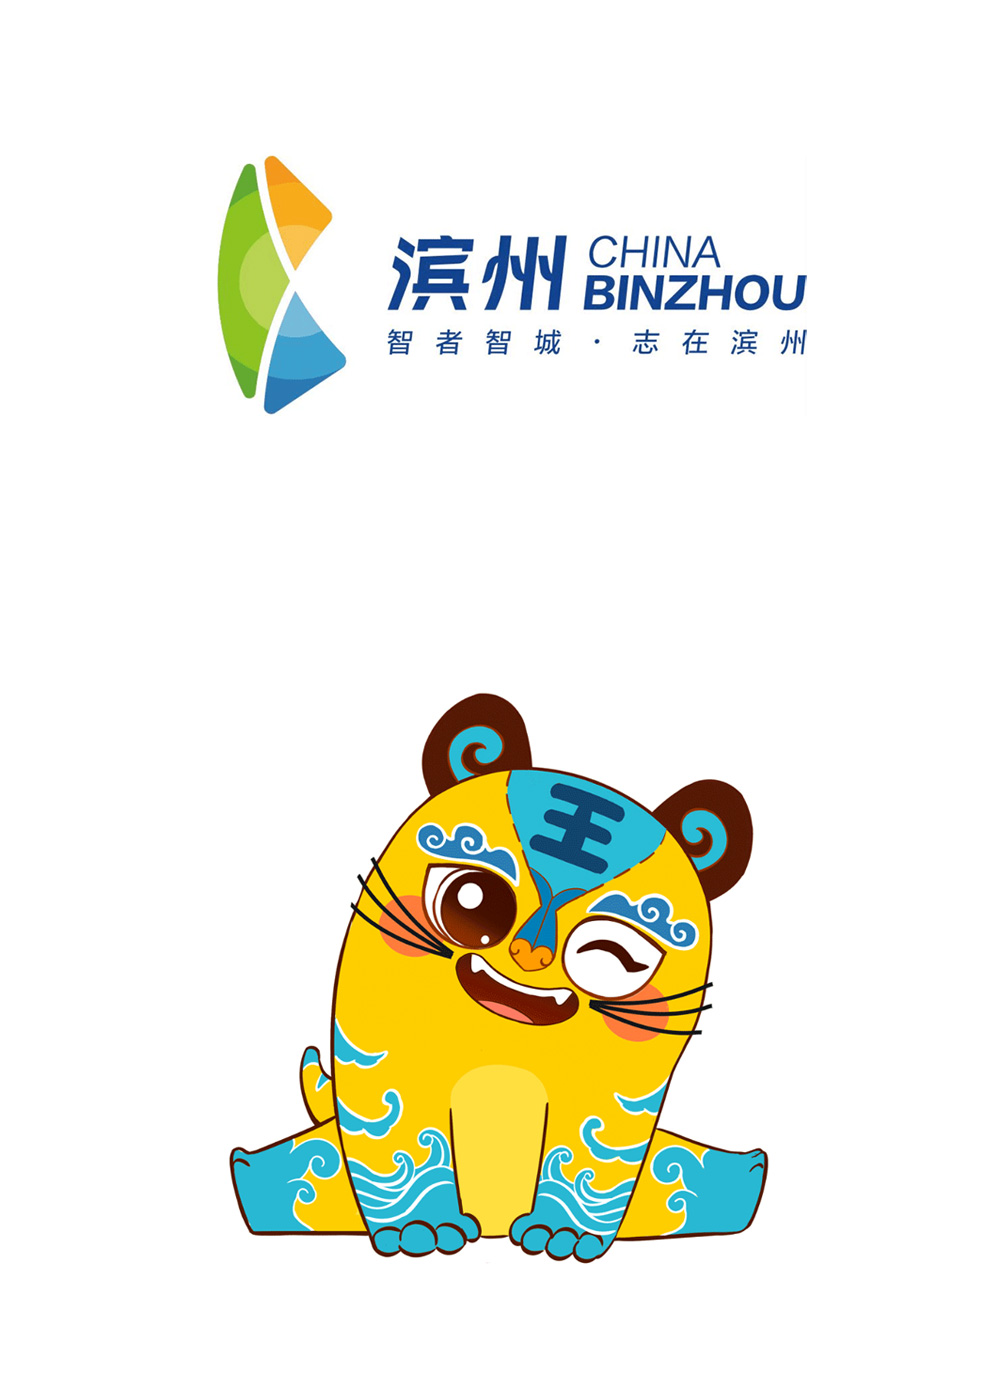 滨州城市发布形象logo